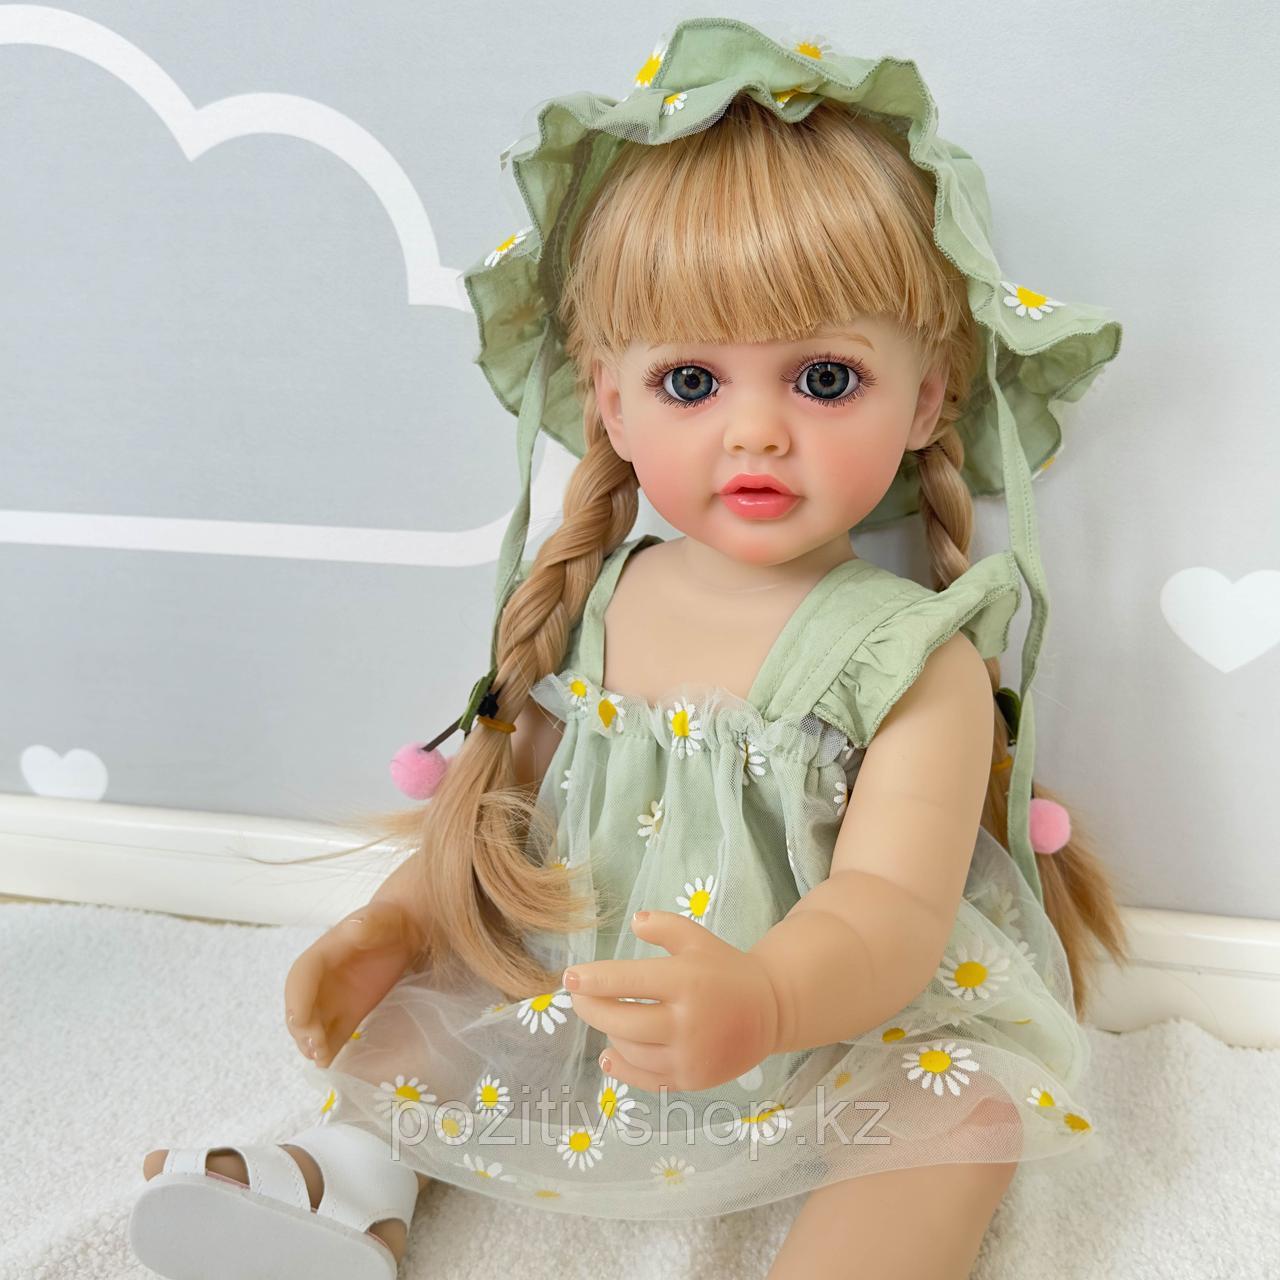 Кукла Реборн девочка зеленое платье с ромашками